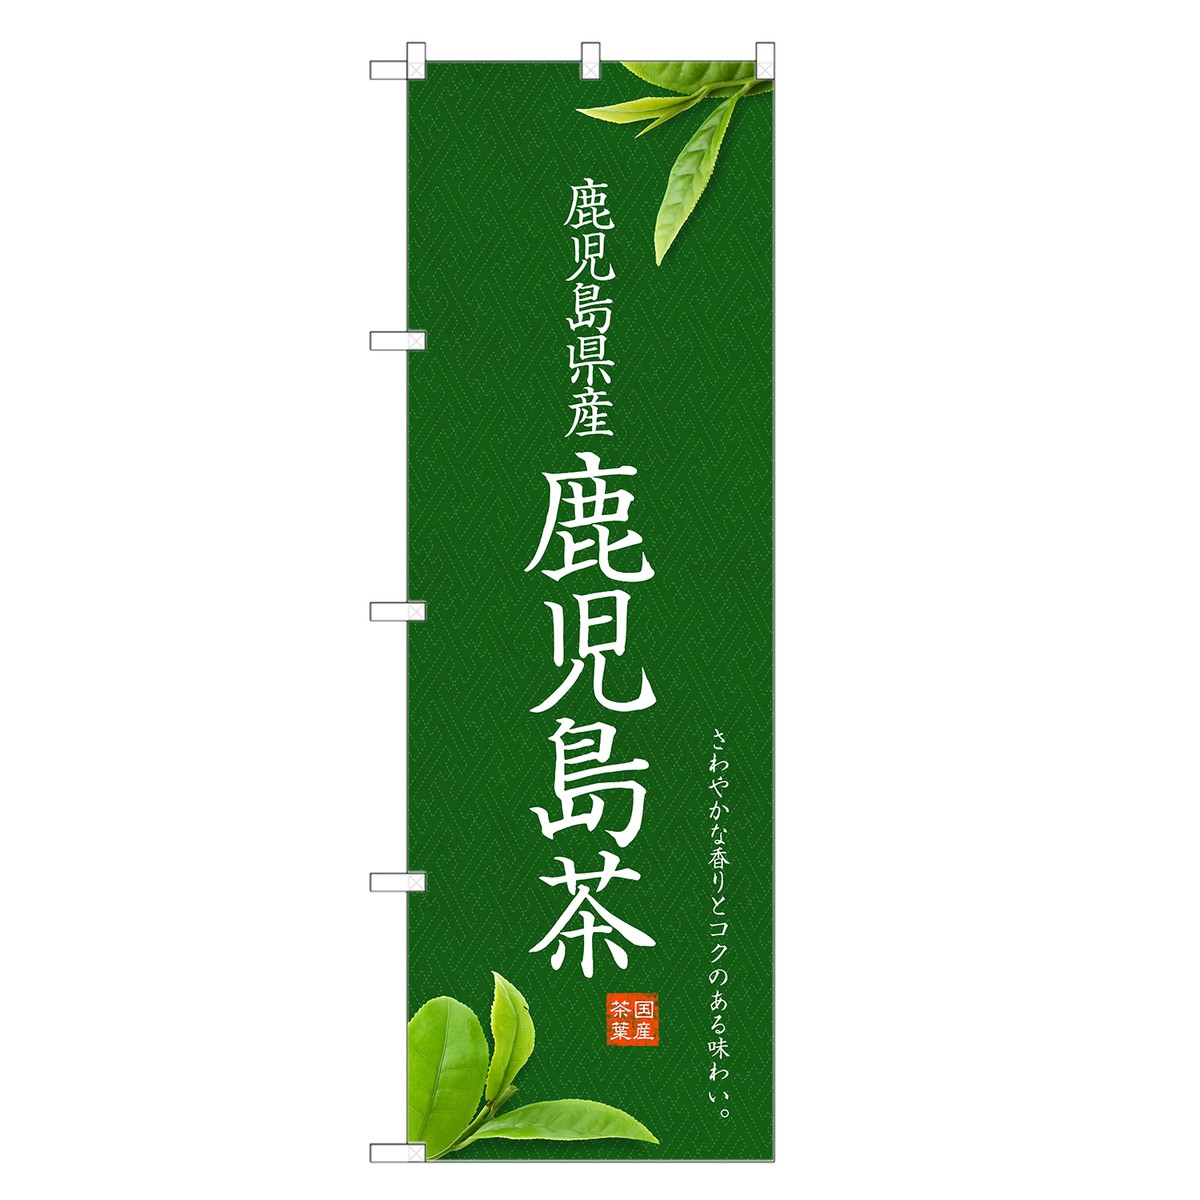 のぼり旗 鹿児島茶 のぼり | 茶 お茶 緑茶 日本茶 | 四方三巻縫製 T01-0017C-R